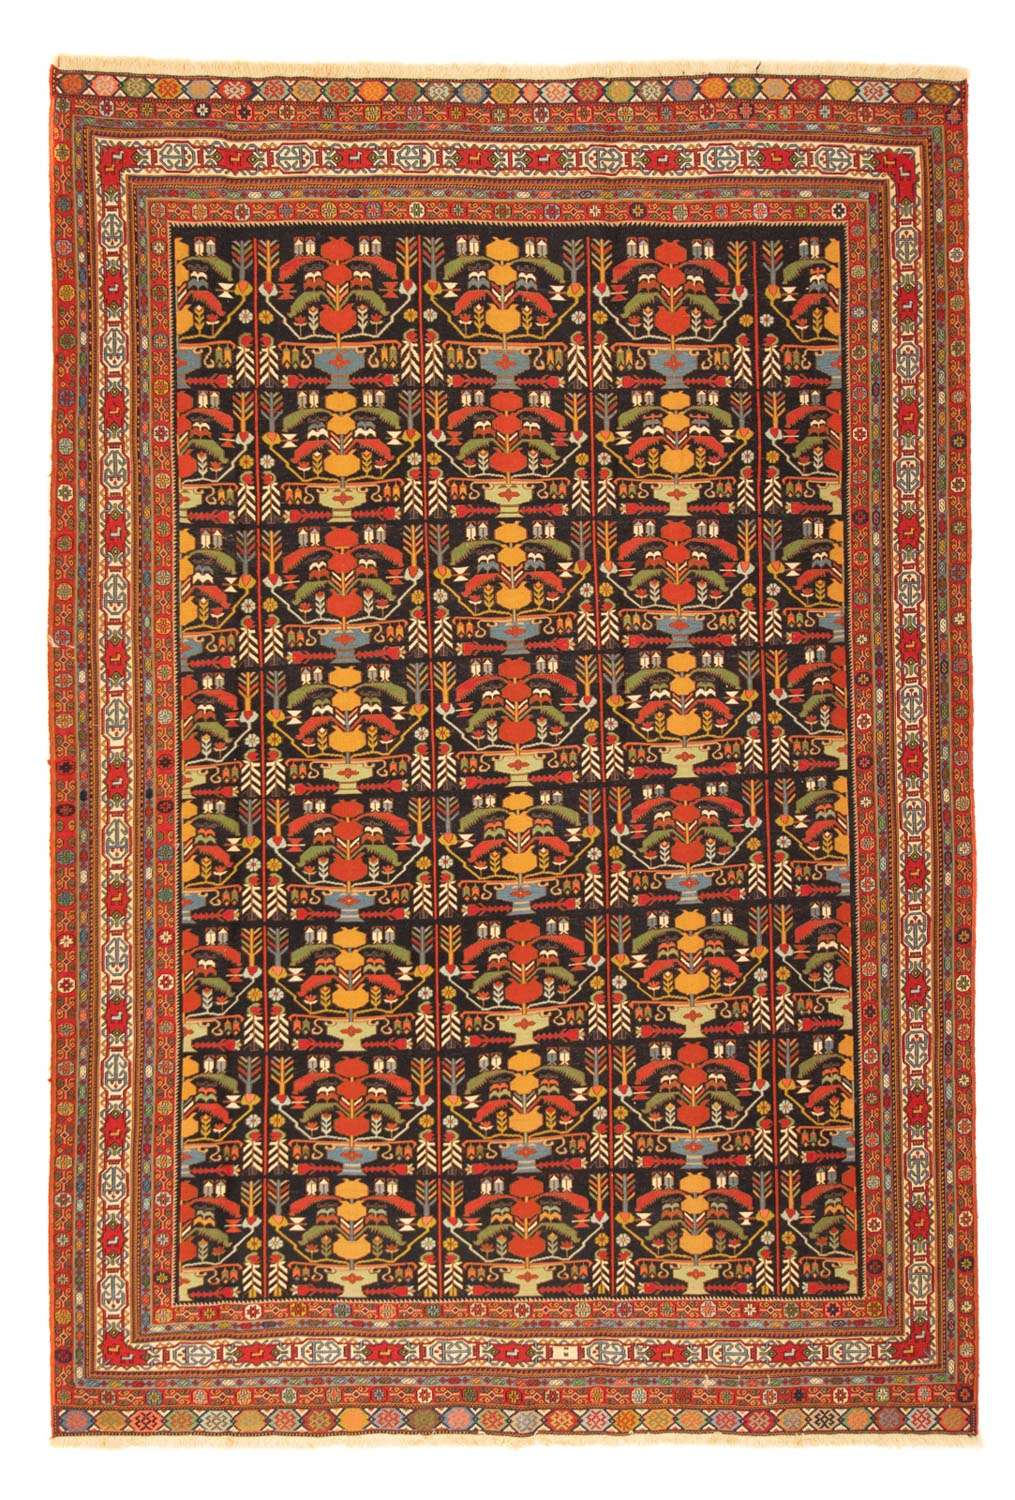 Tapis persan - Nomadic - 284 x 195 cm - multicolore